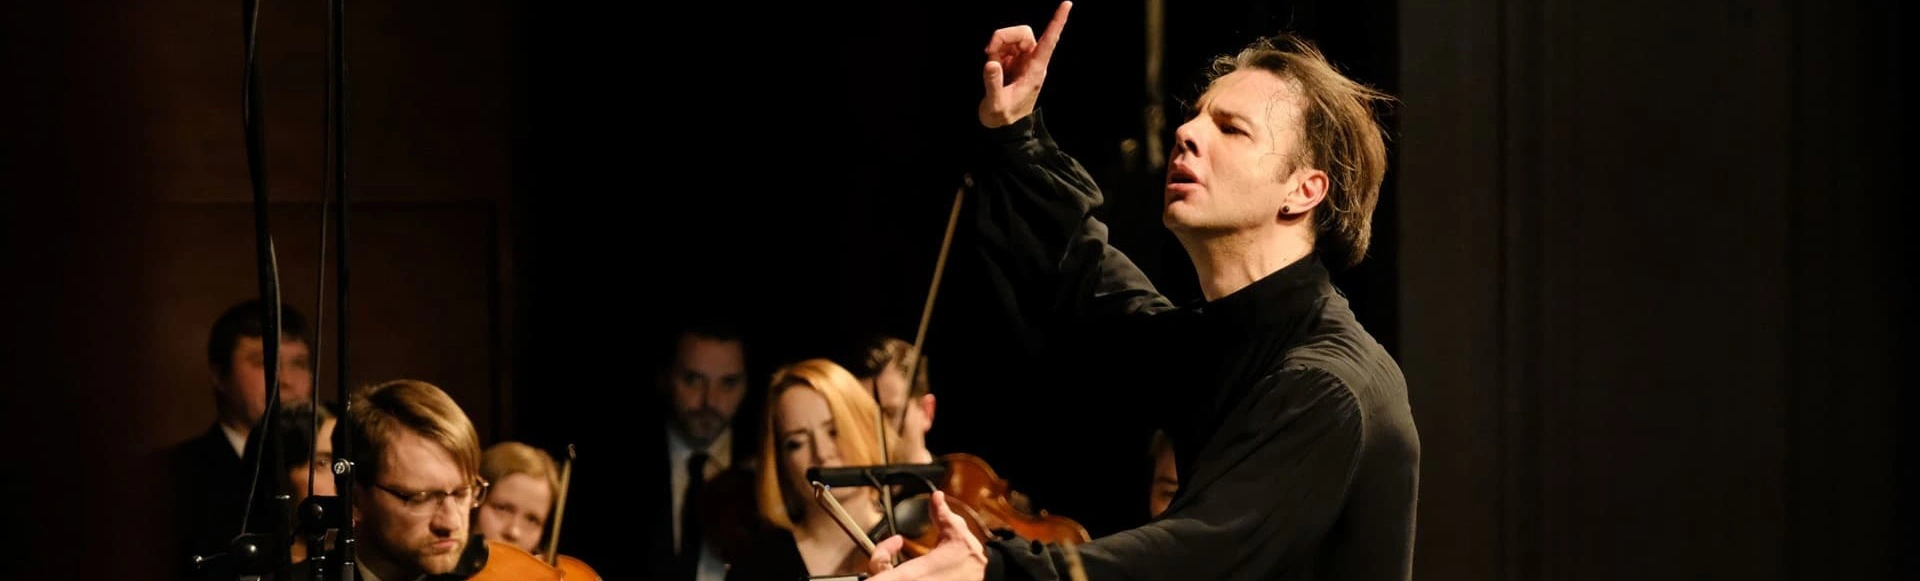 Orchestra Utopia. Teodor Currentzis Conductor